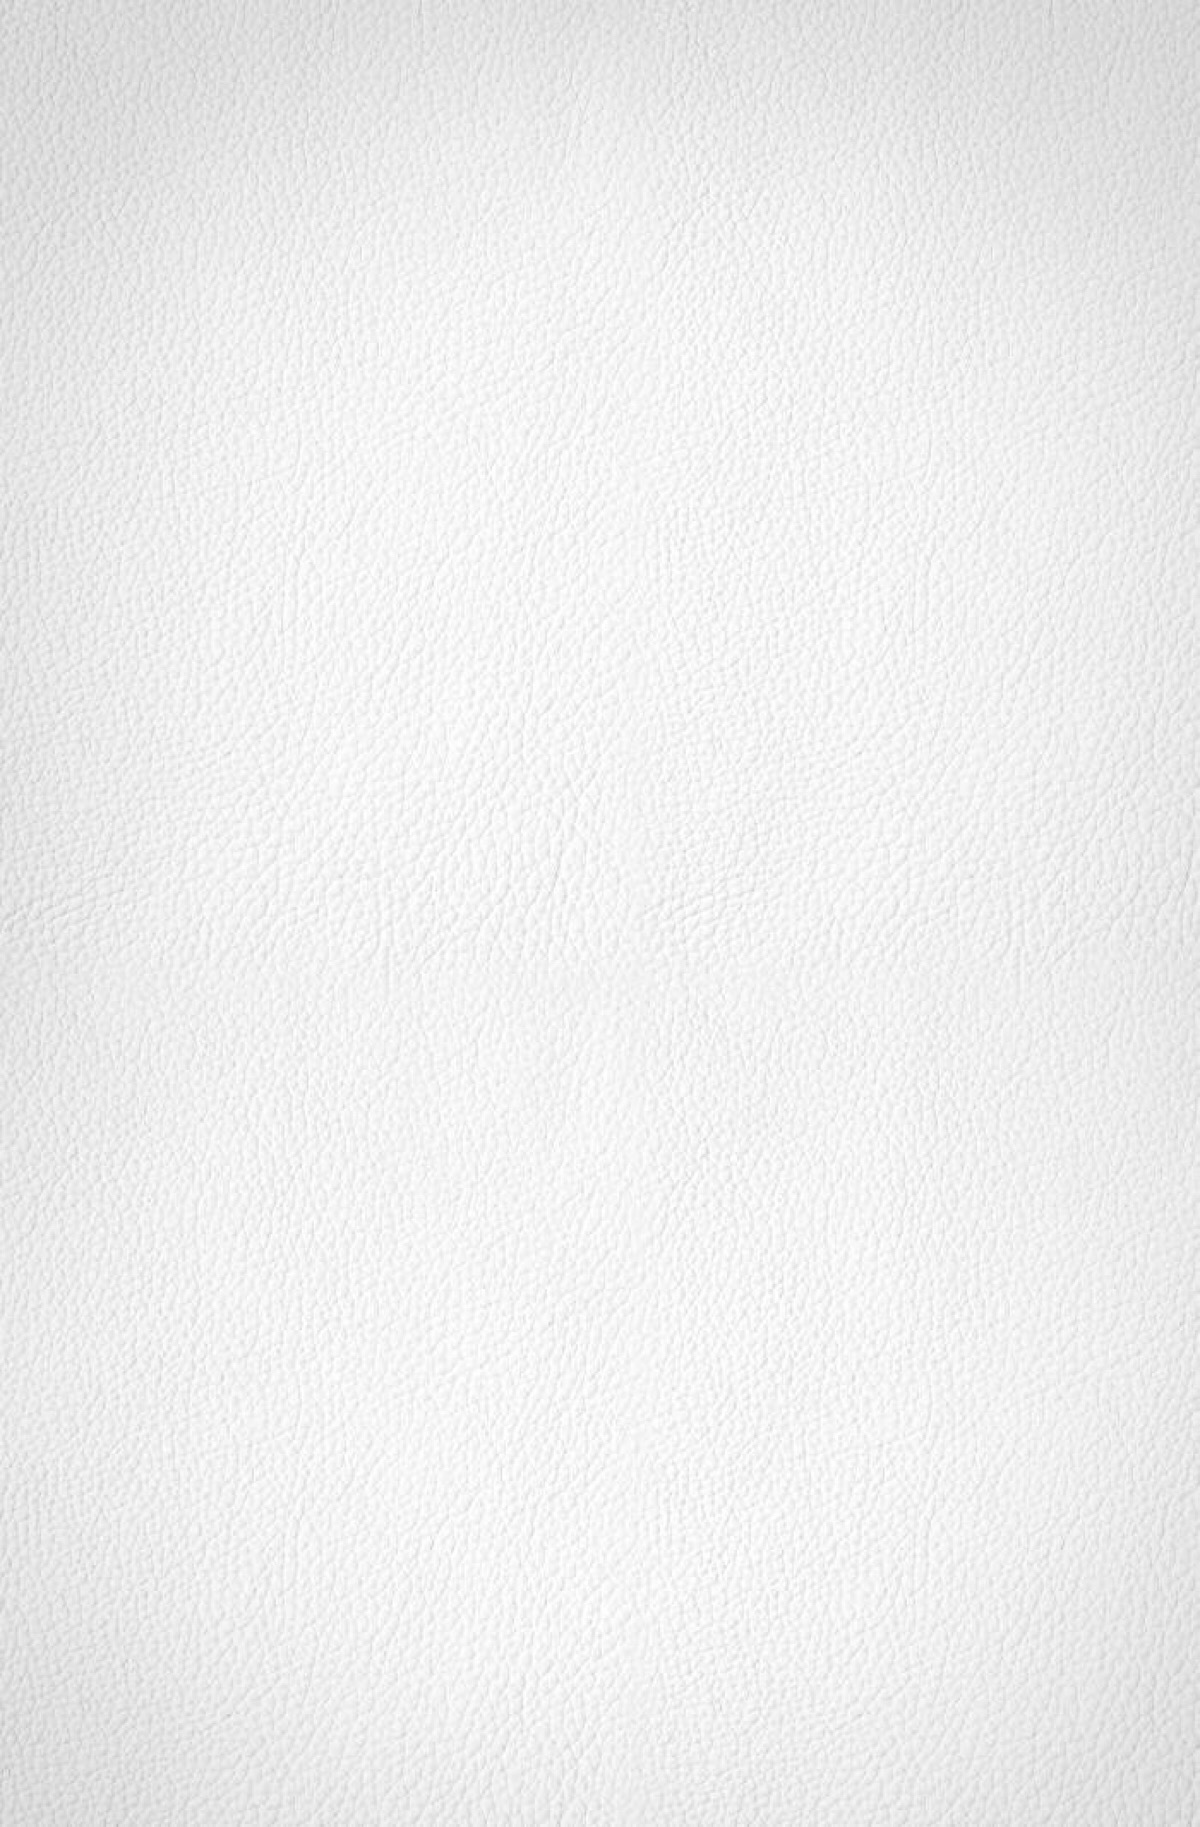 苹果壁纸纯白图片